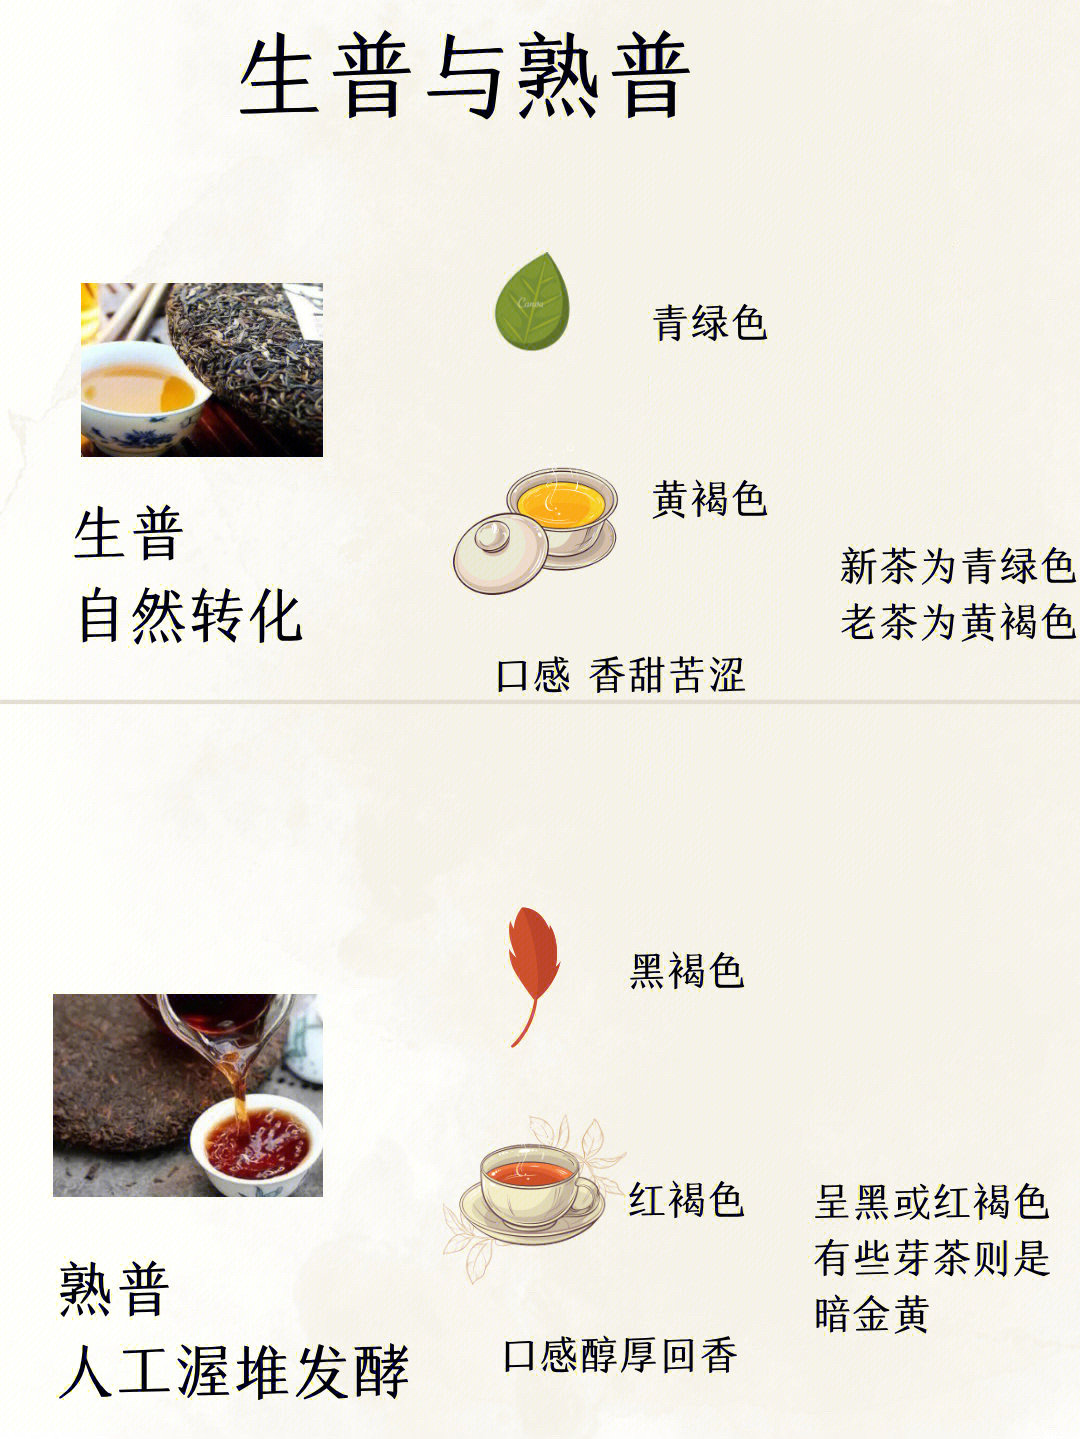 普洱生茶和熟茶的功效图片